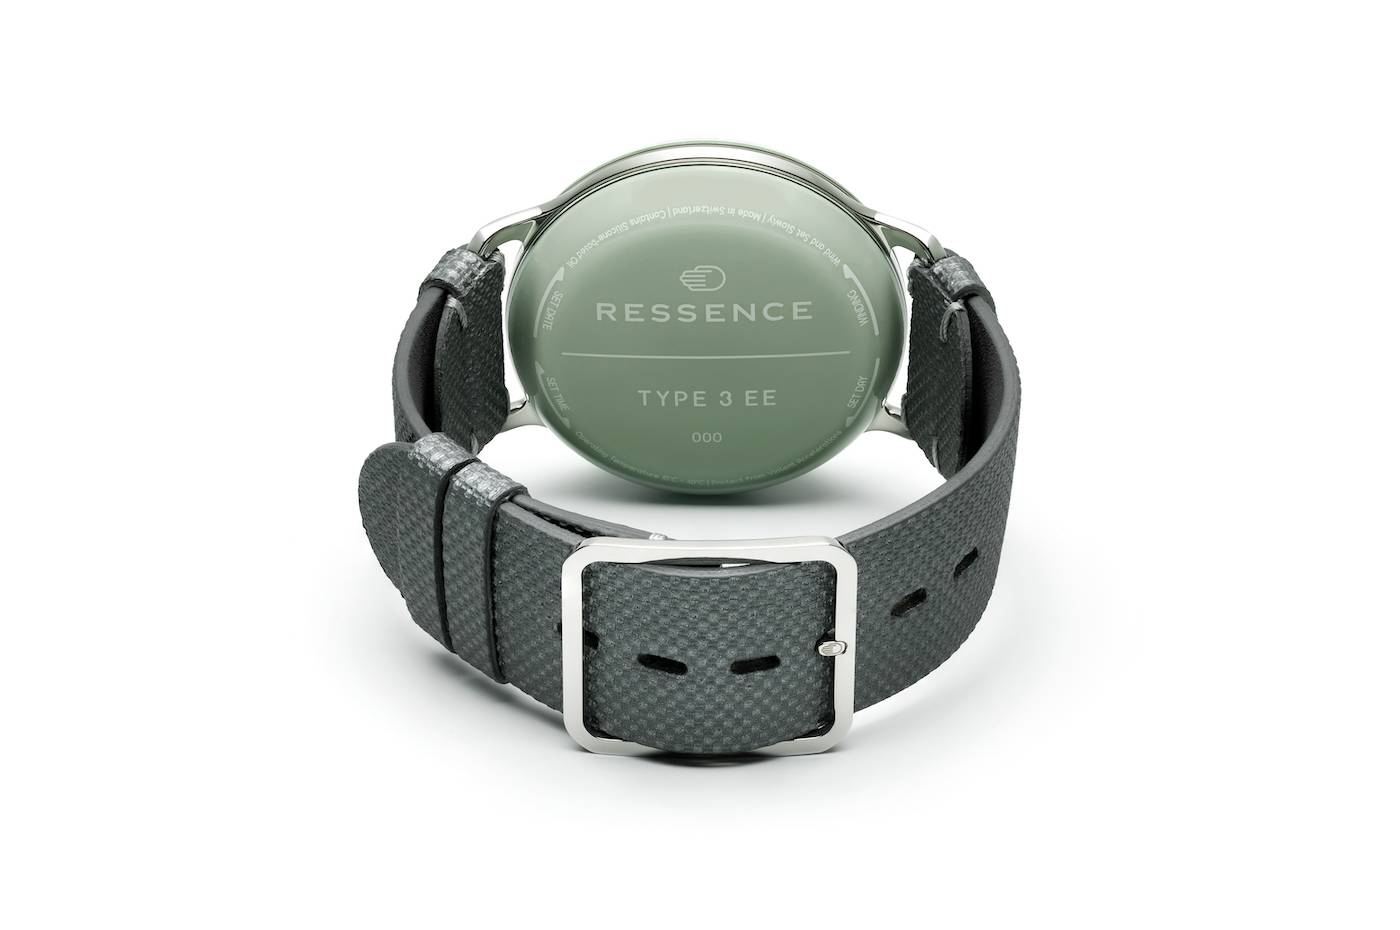 El reloj héroe de Ressence Type 3 EE adquiere un nuevo tono verde eucalipto